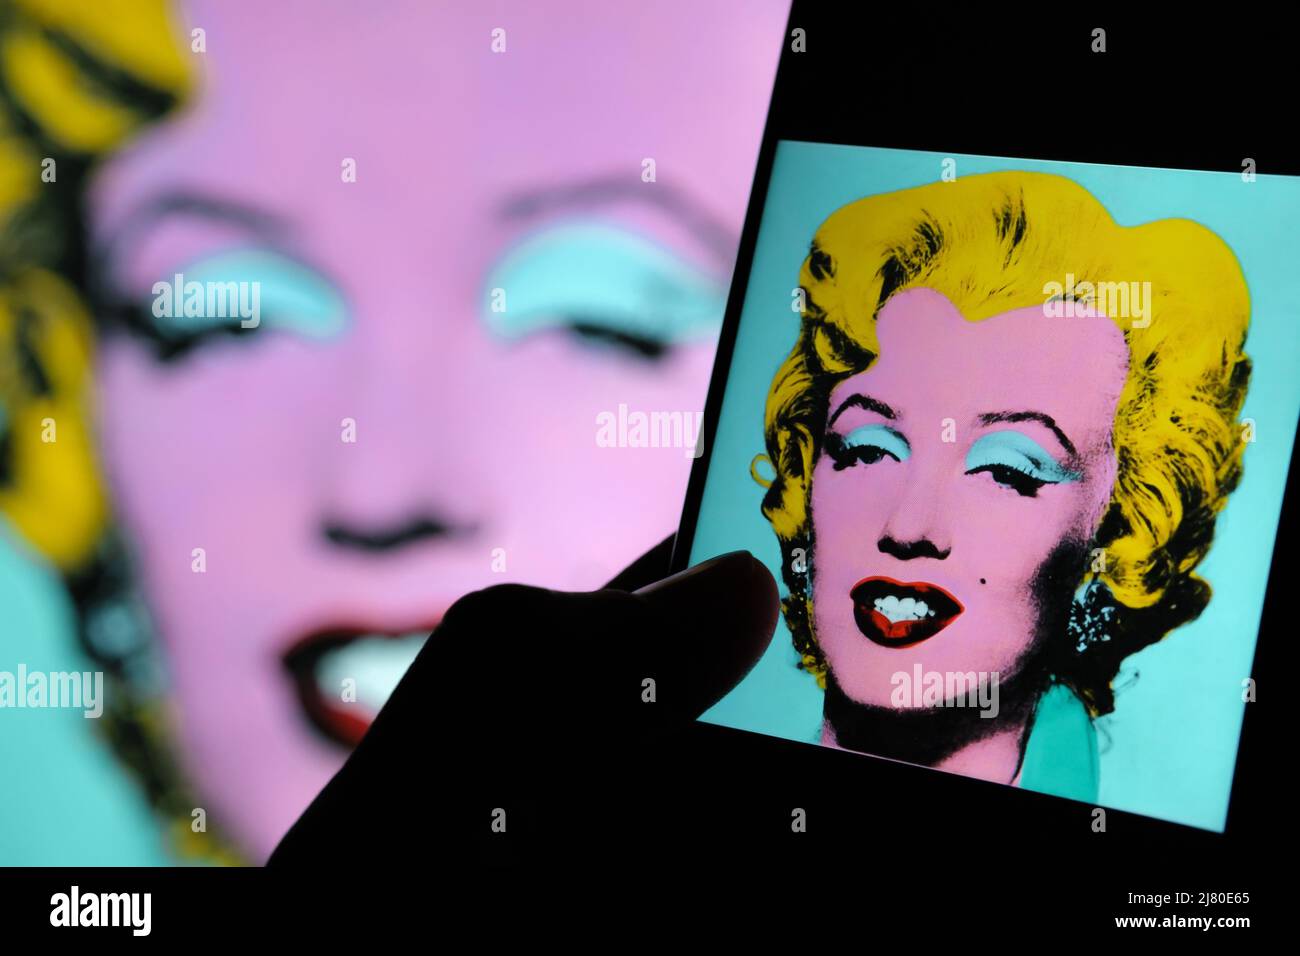 Geschossen Sage Blue Marilyn Kunstwerk auf einem Bildschirm von ipad umgeben von Dollar-Banknoten. Ein Porträt von Marilyn Monroe von Andy Warhol. Stafford, Großbritannien Stockfoto